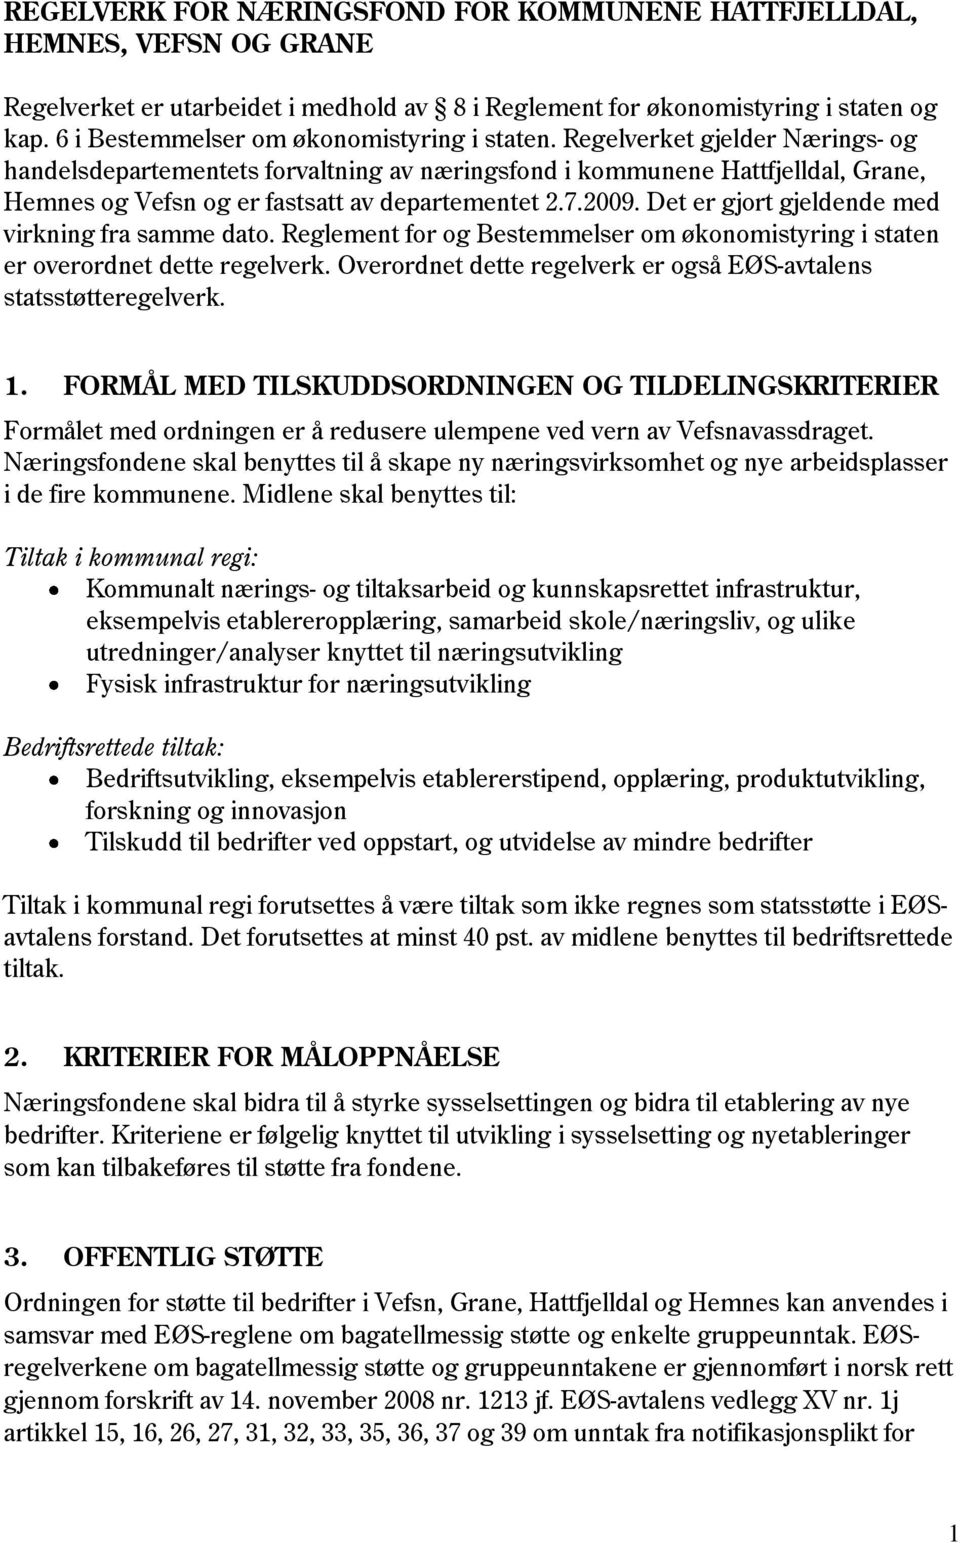 Regelverket gjelder Nærings- og handelsdepartementets forvaltning av næringsfond i kommunene Hattfjelldal, Grane, Hemnes og Vefsn og er fastsatt av departementet 2.7.2009.